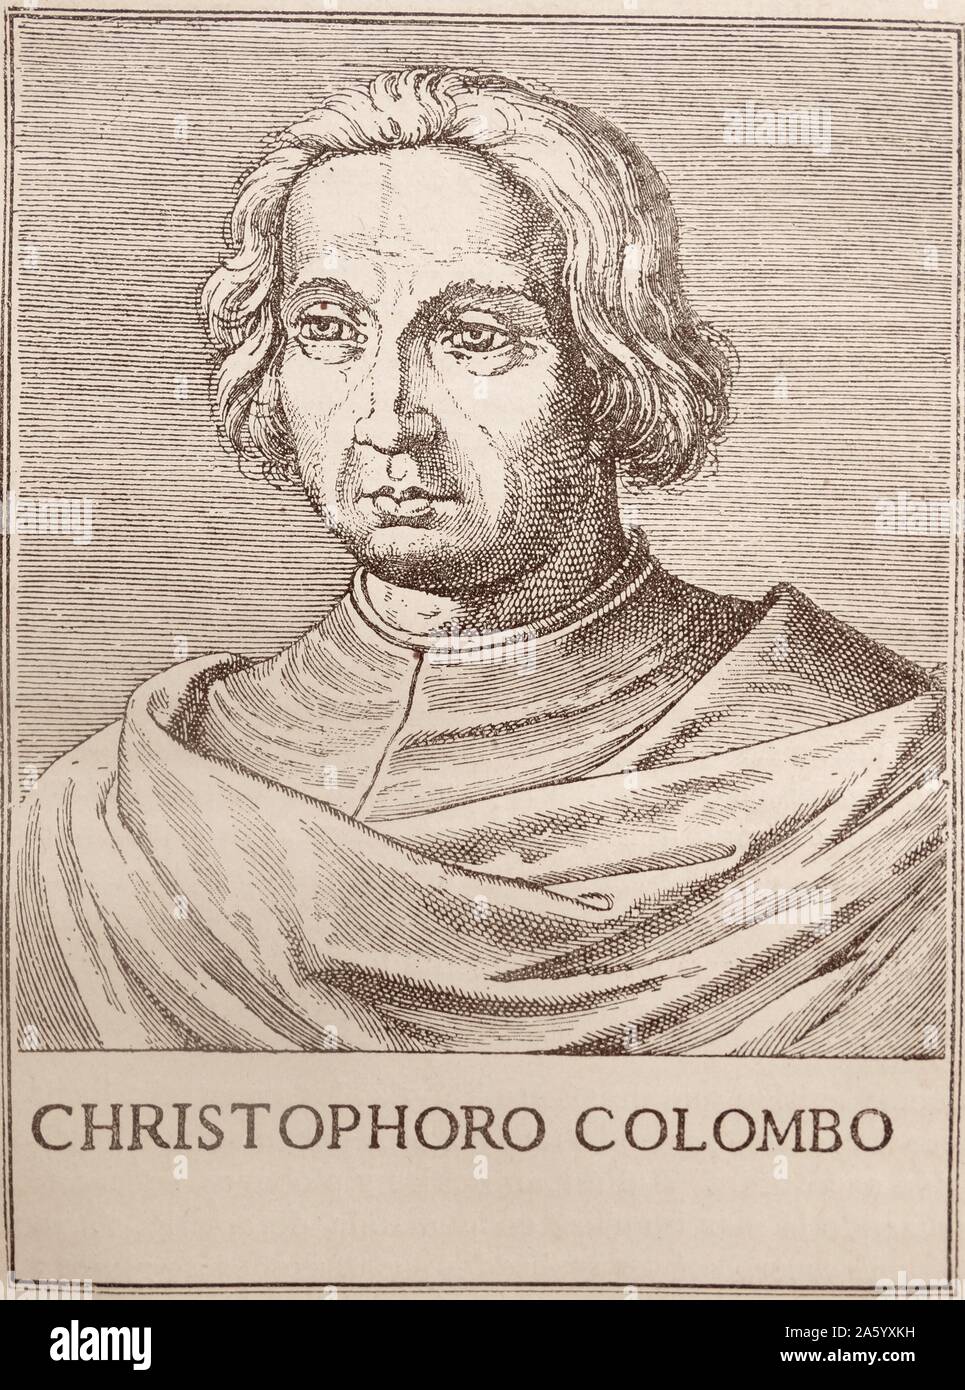 Christopher Columbus; Holzschnitt-Abbildung aus einem spanischen Buch aus dem 16. Jahrhundert Stockfoto